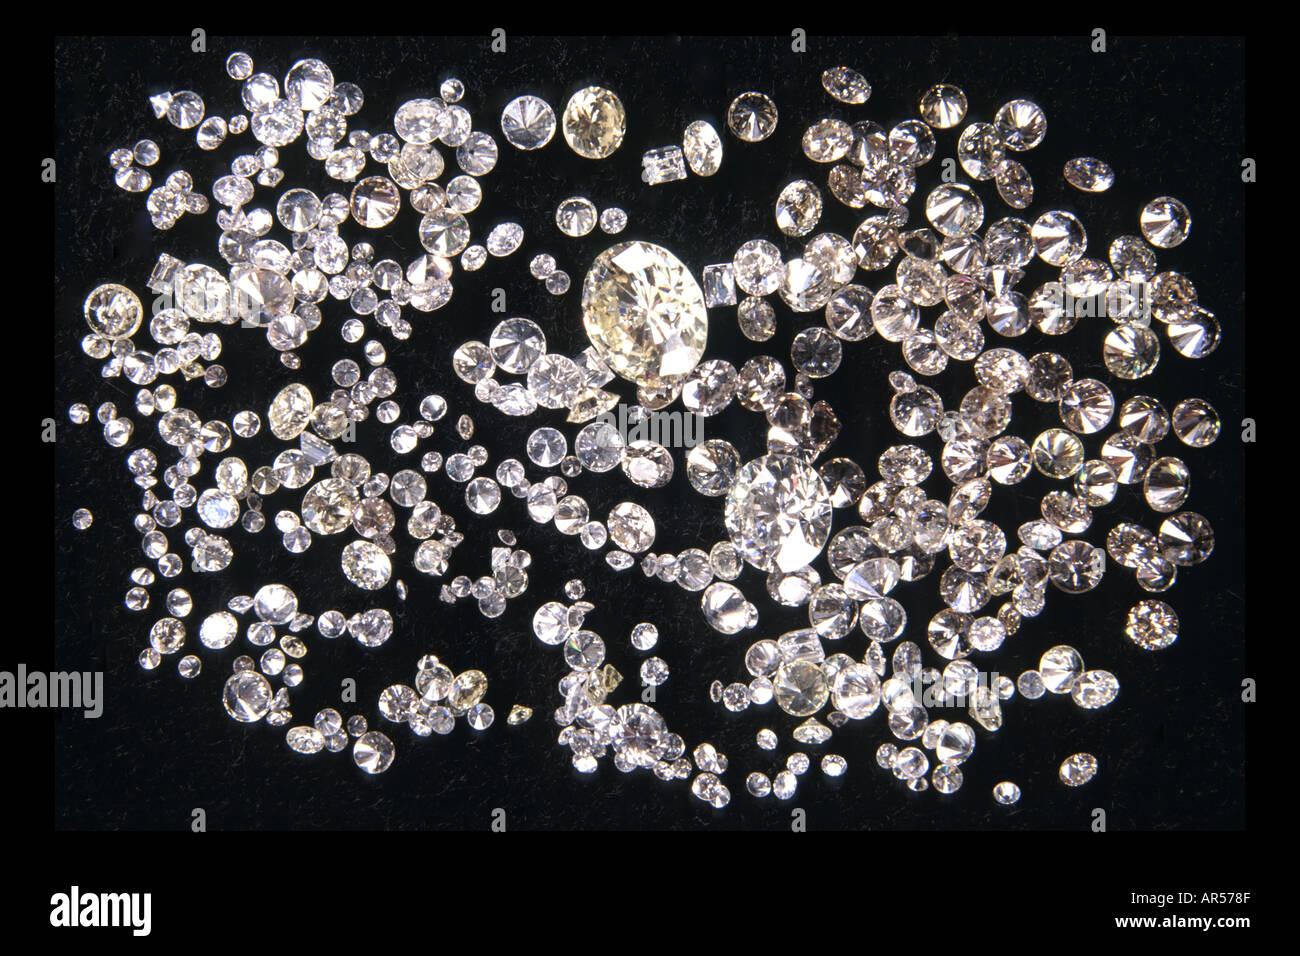 Assortiti e di taglio di diamanti lucidati sul velluto nero. Questa immagine è stata precedentemente disponibile come immagine A9D399. Foto Stock